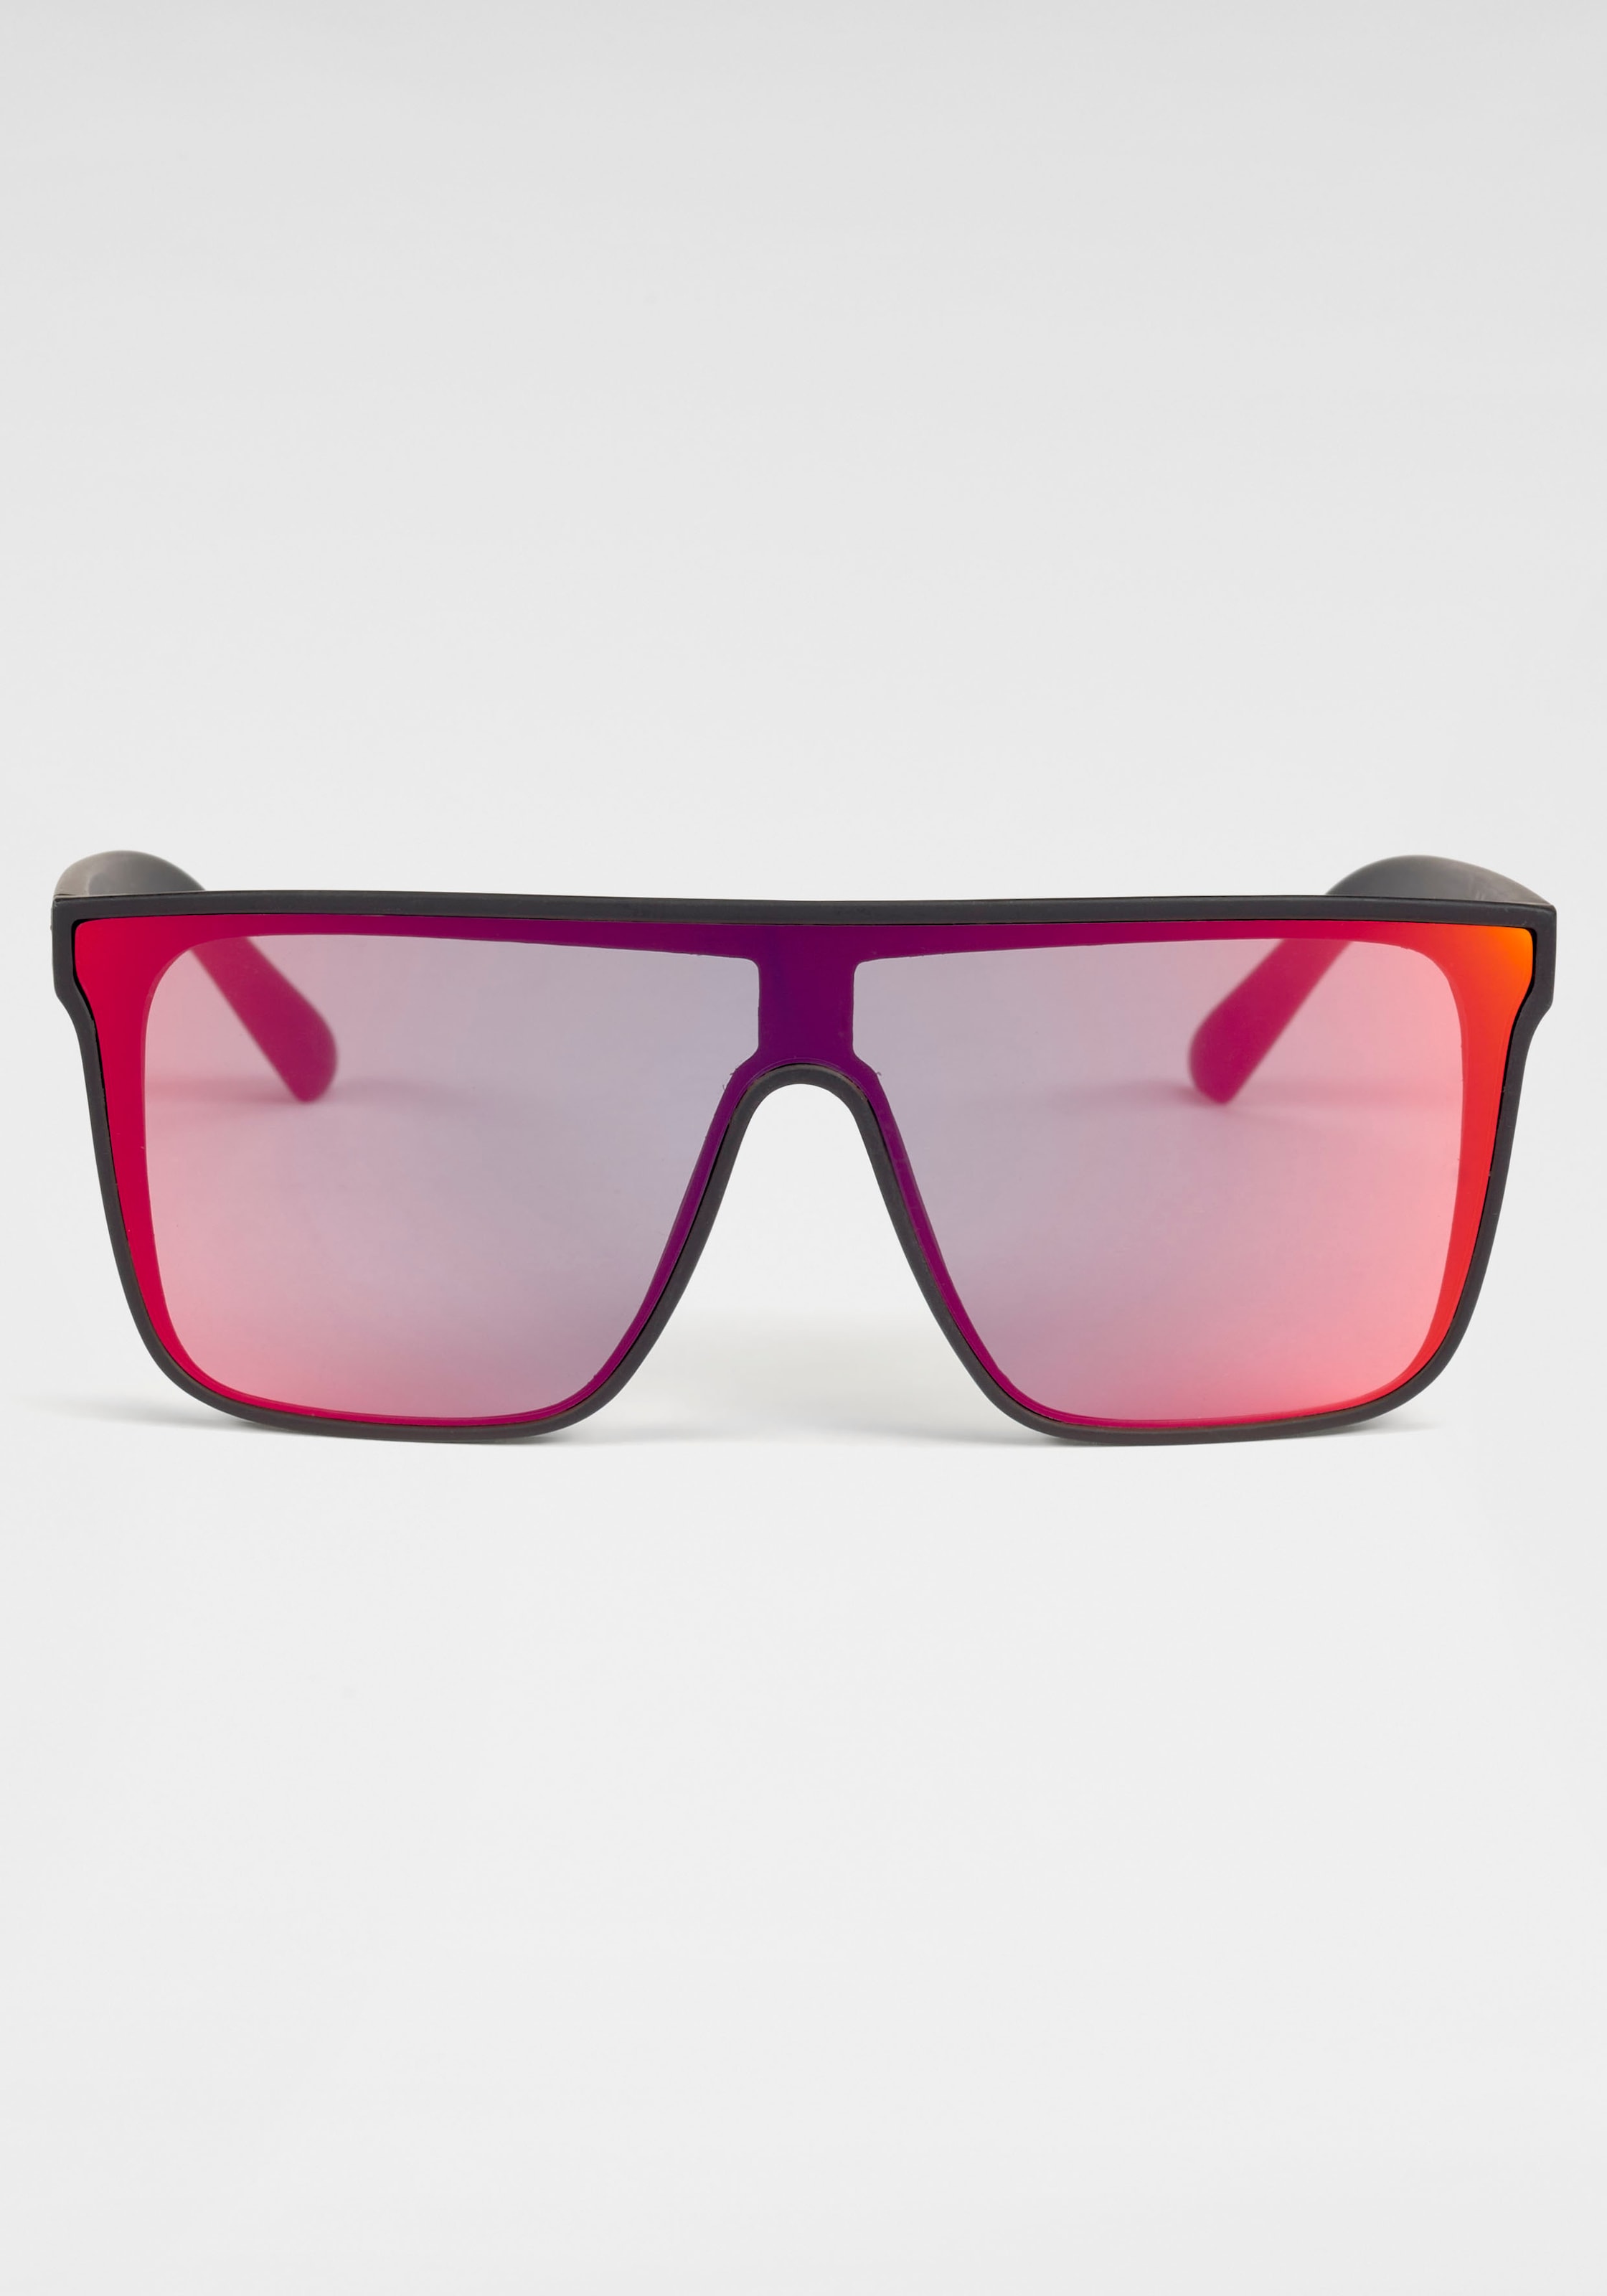 Venice Beach Sonnenbrille, Einscheibensonnenbrille aus Kunststoff